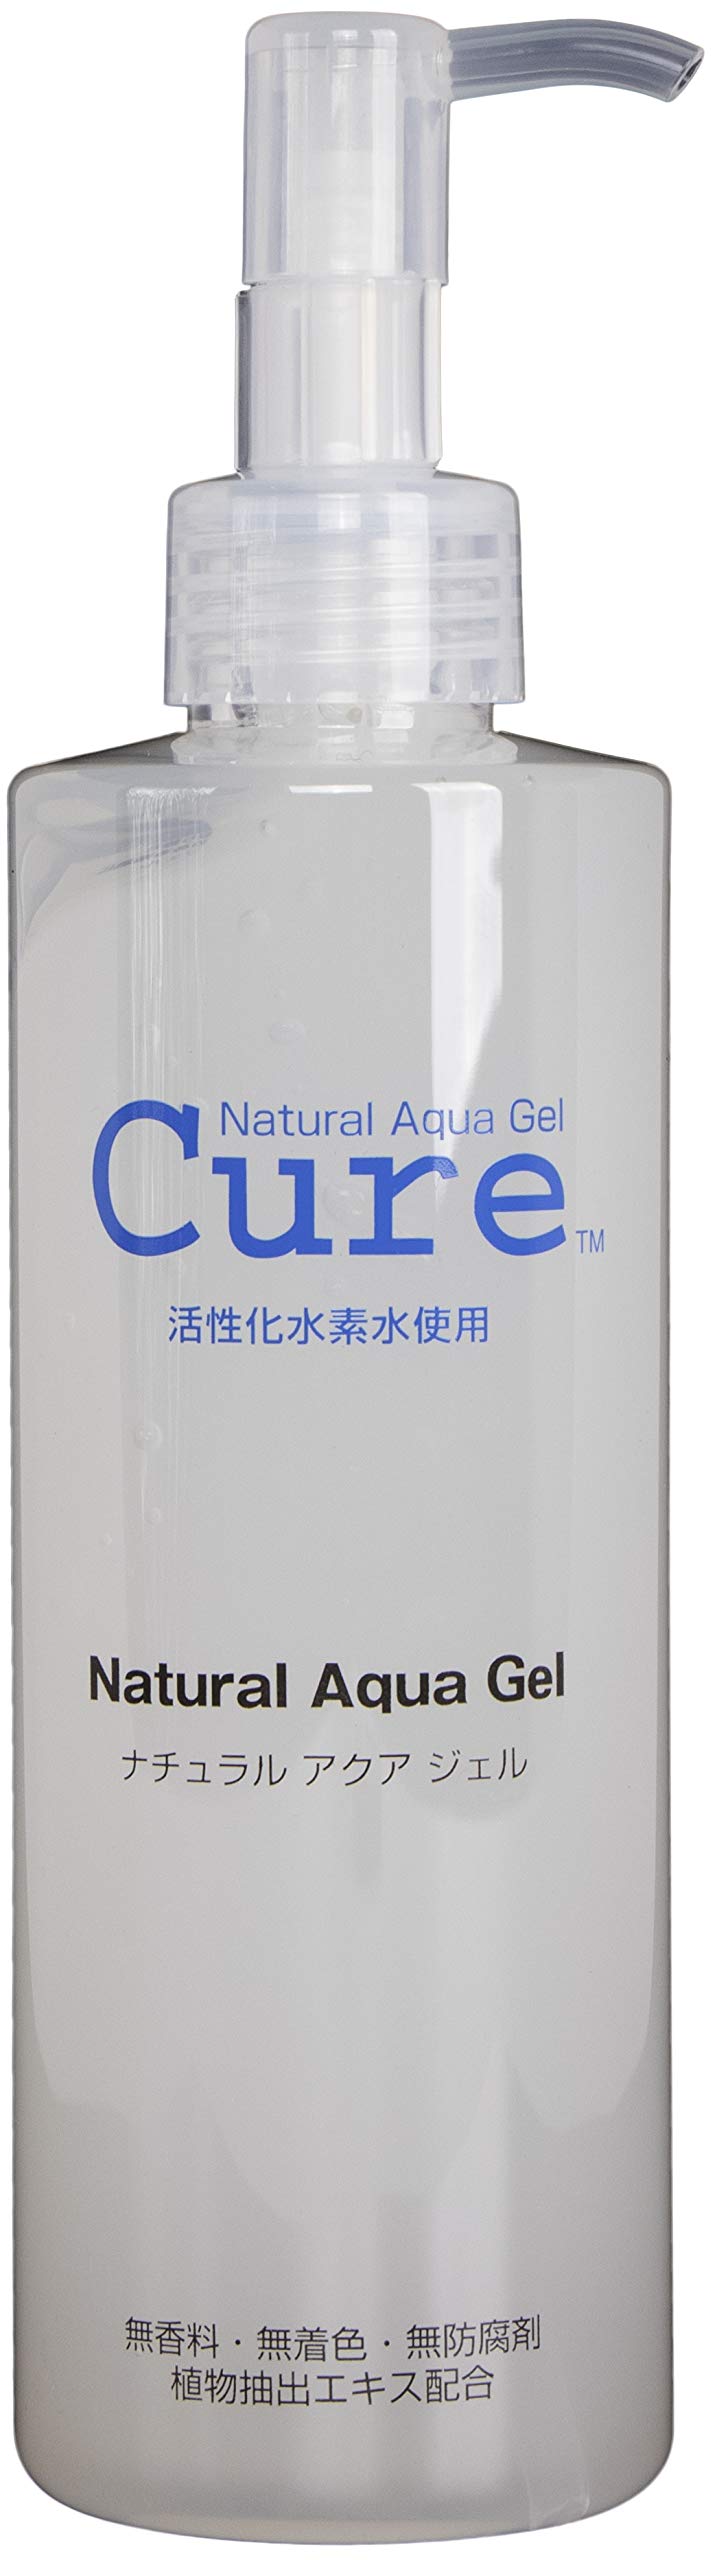 Natural Aqua Gel. Скатка для лица Aqua. Cure natural Aqua Gel. Аква гель для лица.